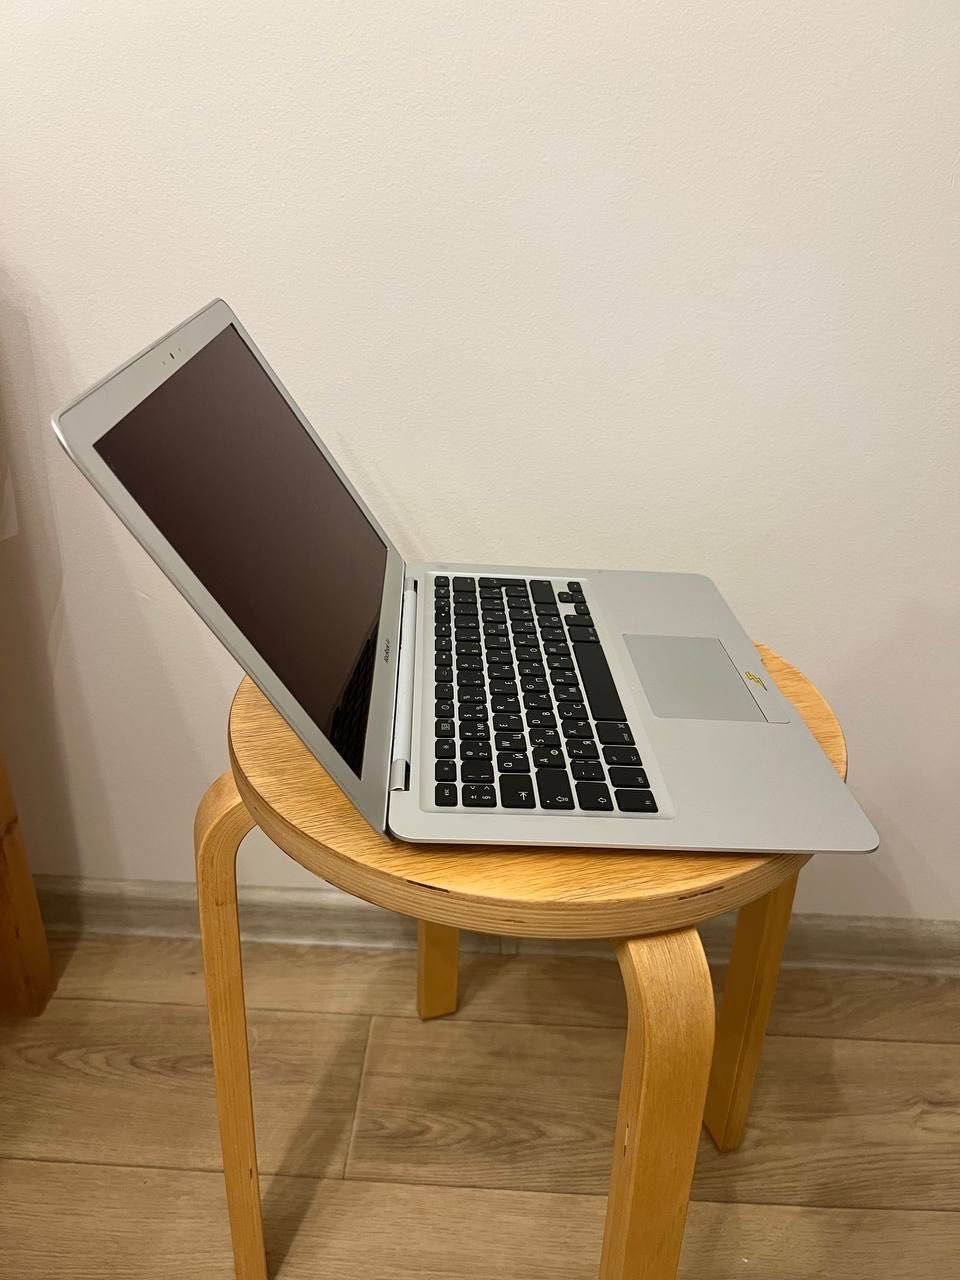 MacBook Air 13" (A1304, Mid-09)